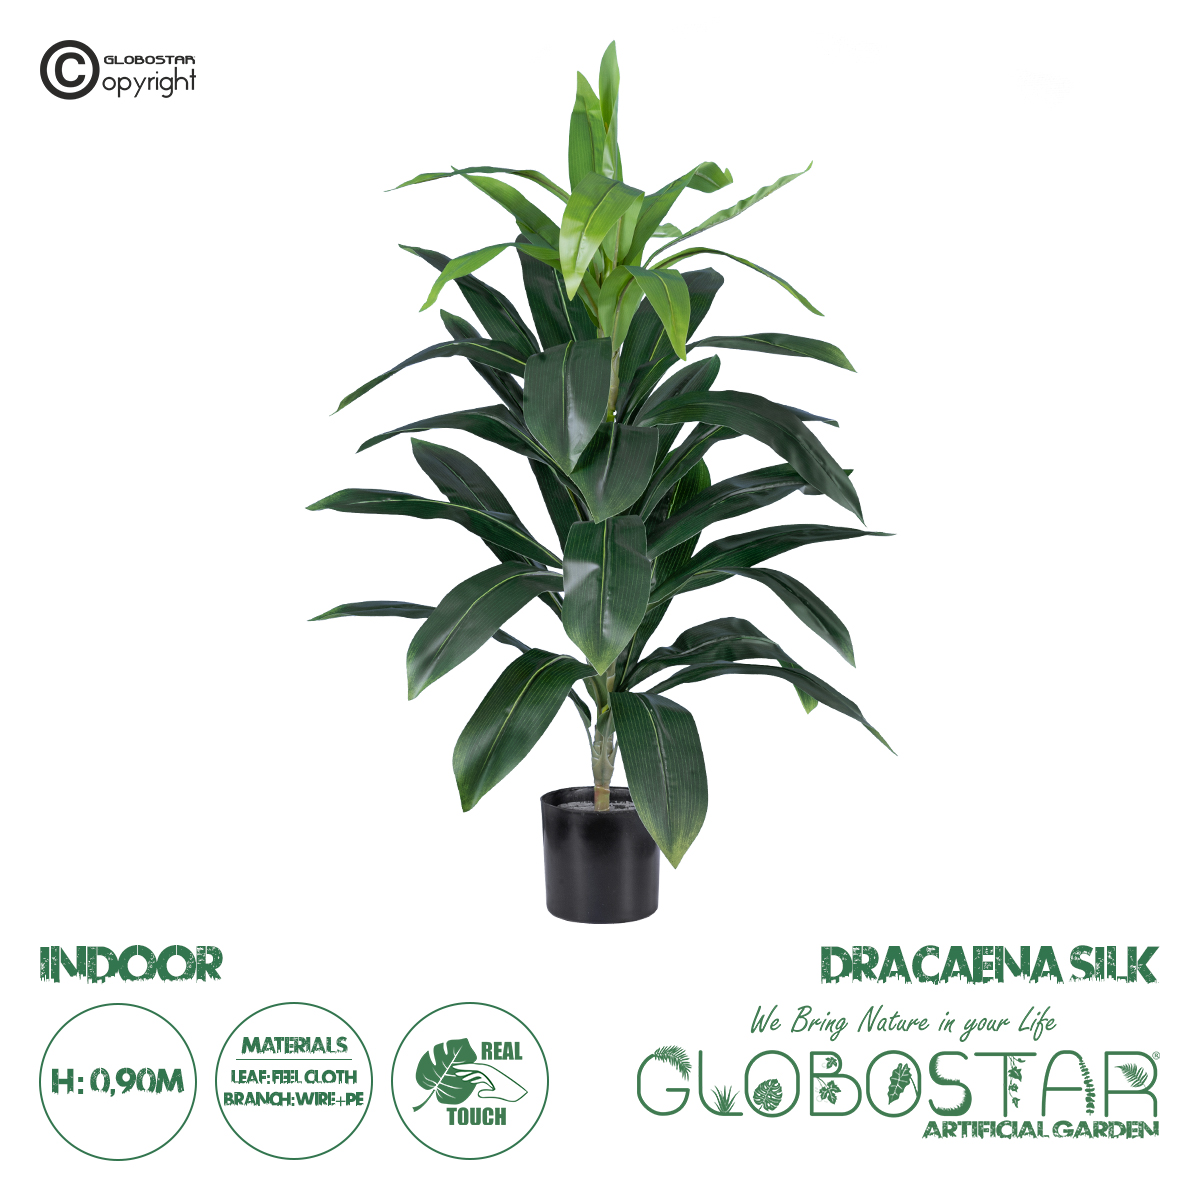 GloboStar® Artificial Garden DRACAENA SILK 20042 Τεχνητό Διακοσμητικό Φυτό Δράκαινα Υ90cm